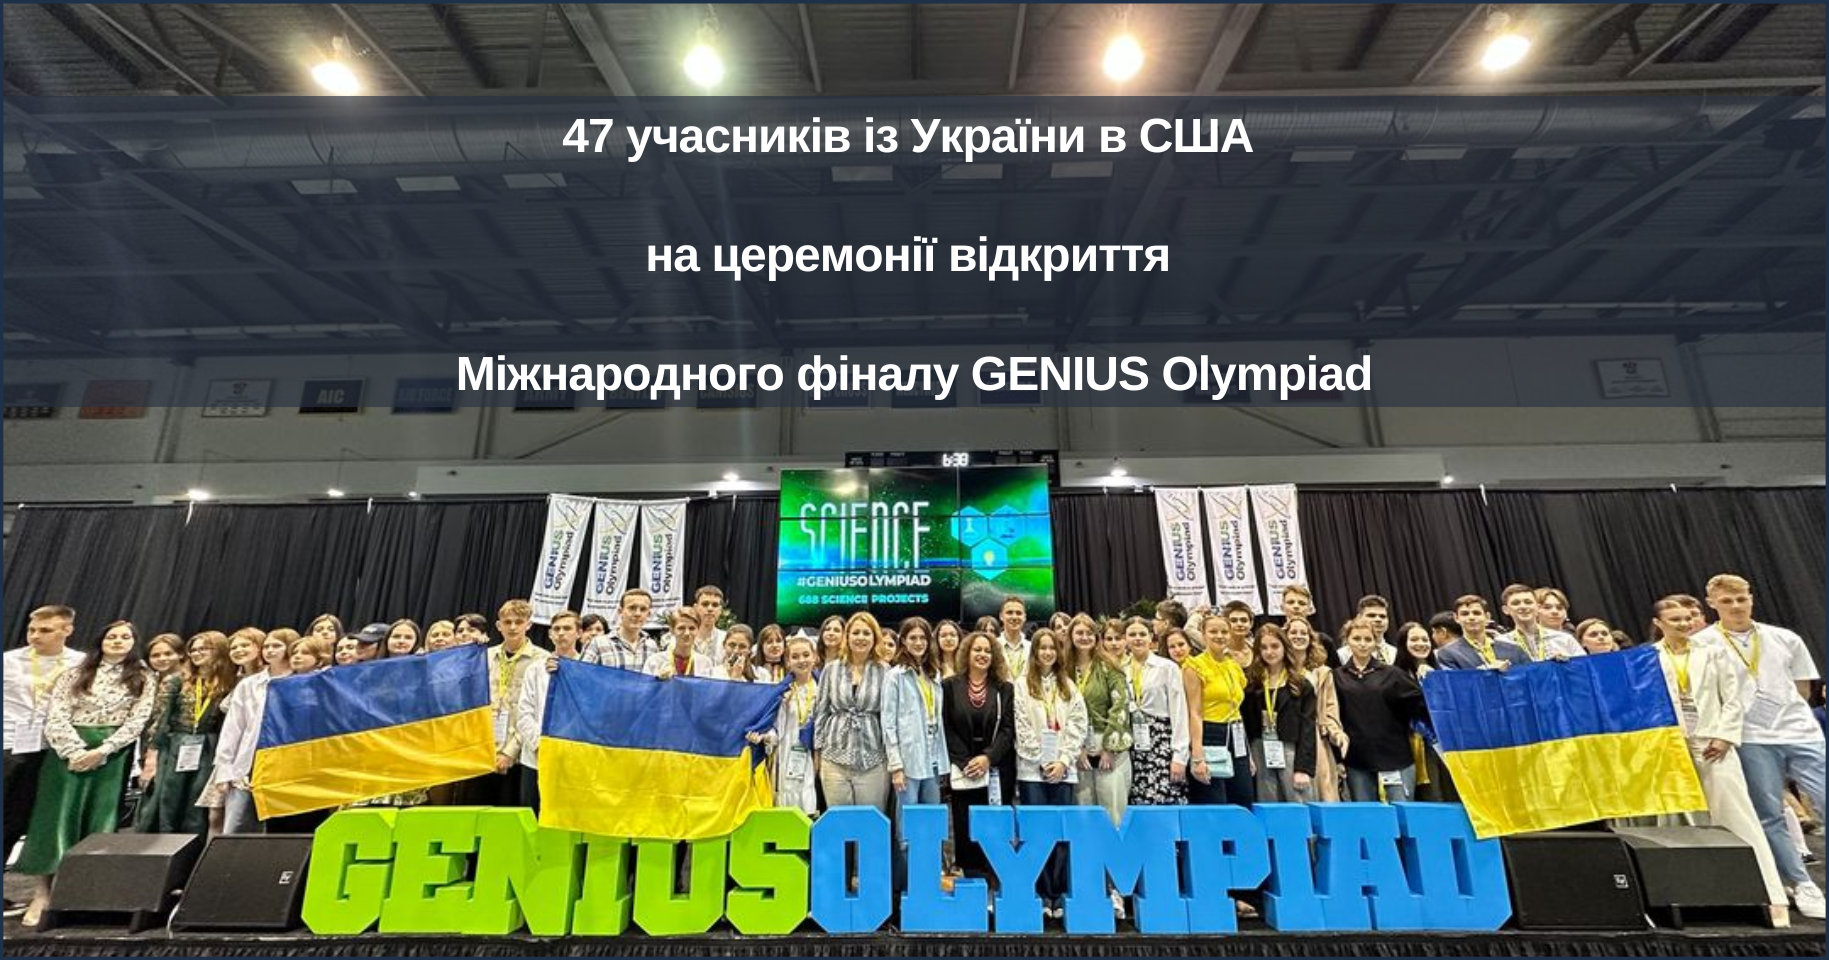 47 учасників із України в США на церемонії відкриття Міжнародного фіналу GENIUS Olympiad